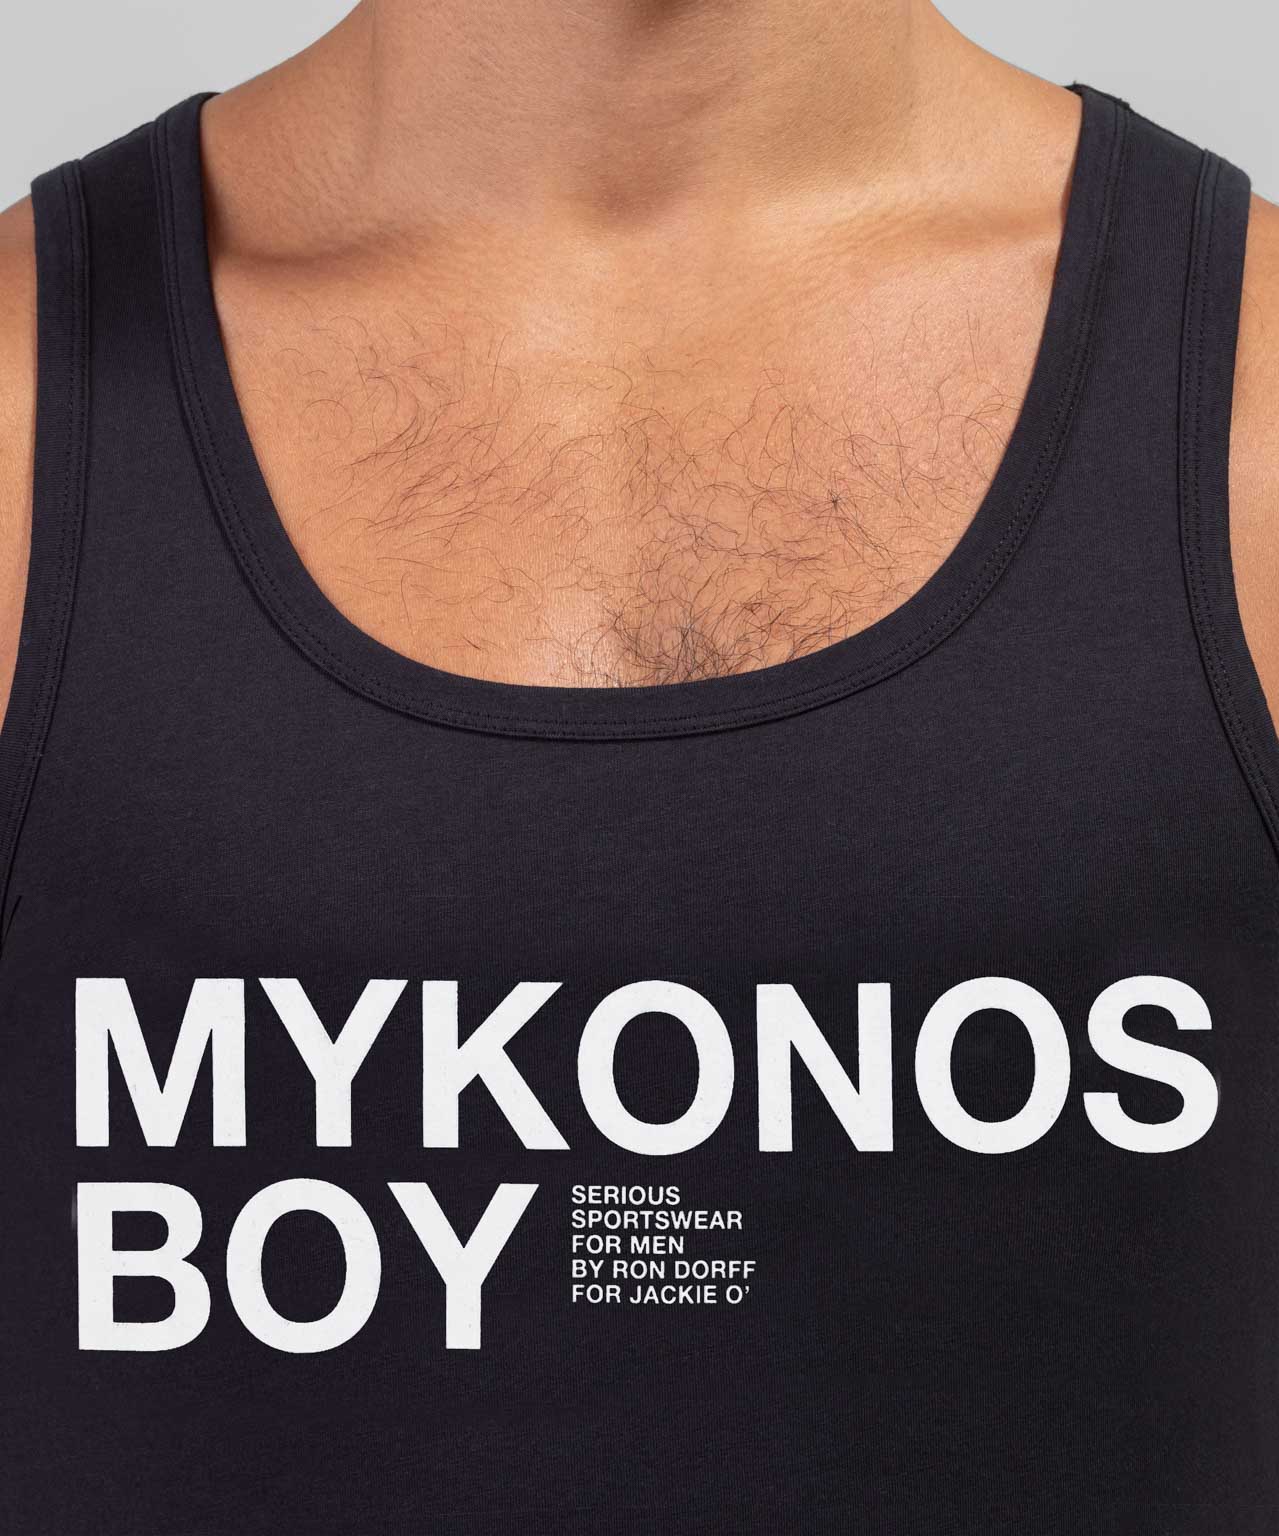 Débardeur en coton organique à imprimé MYKONOS BOY: Noir